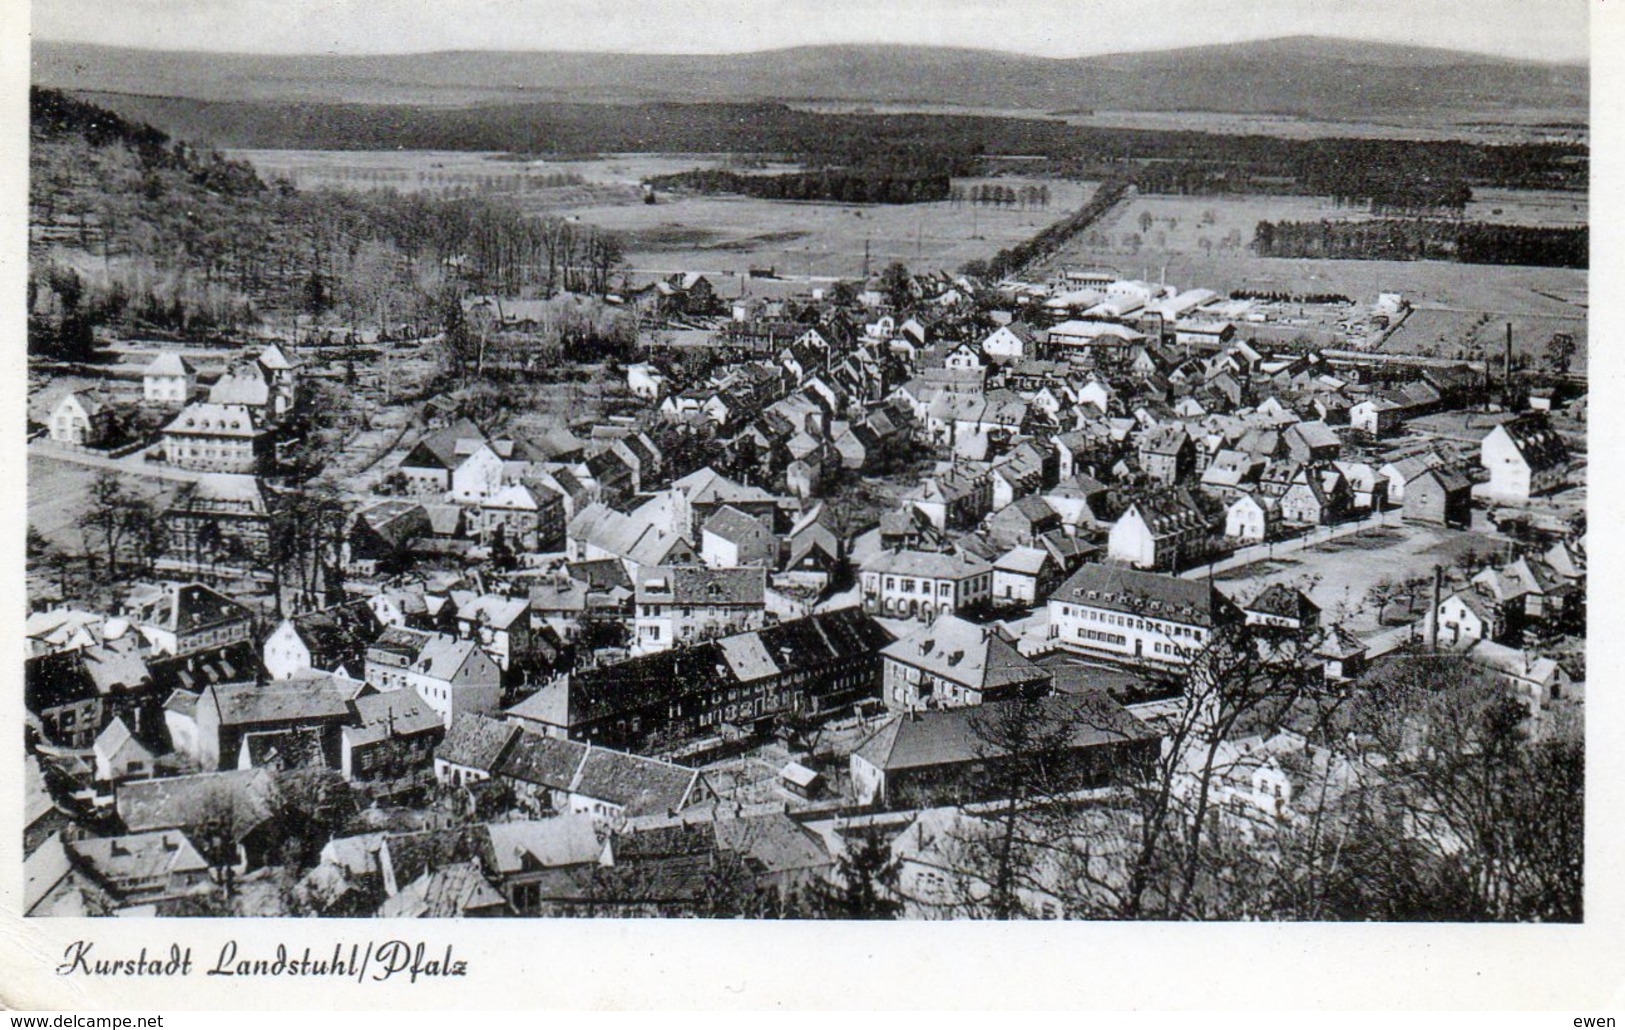 Kurstadt Landstuhl Pfalz. - Landstuhl